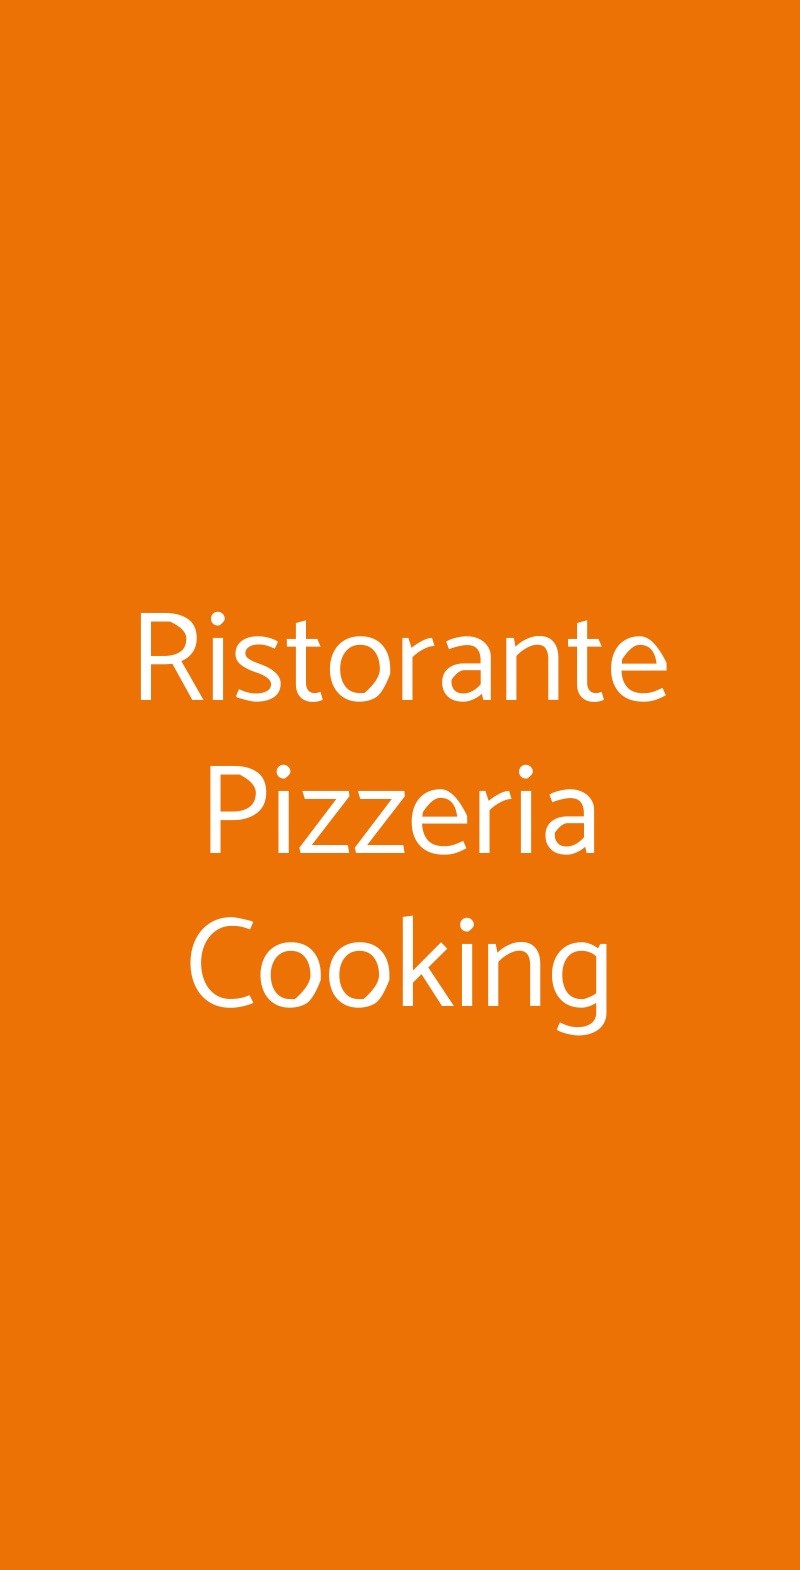 Ristorante Pizzeria Cooking Milano menù 1 pagina